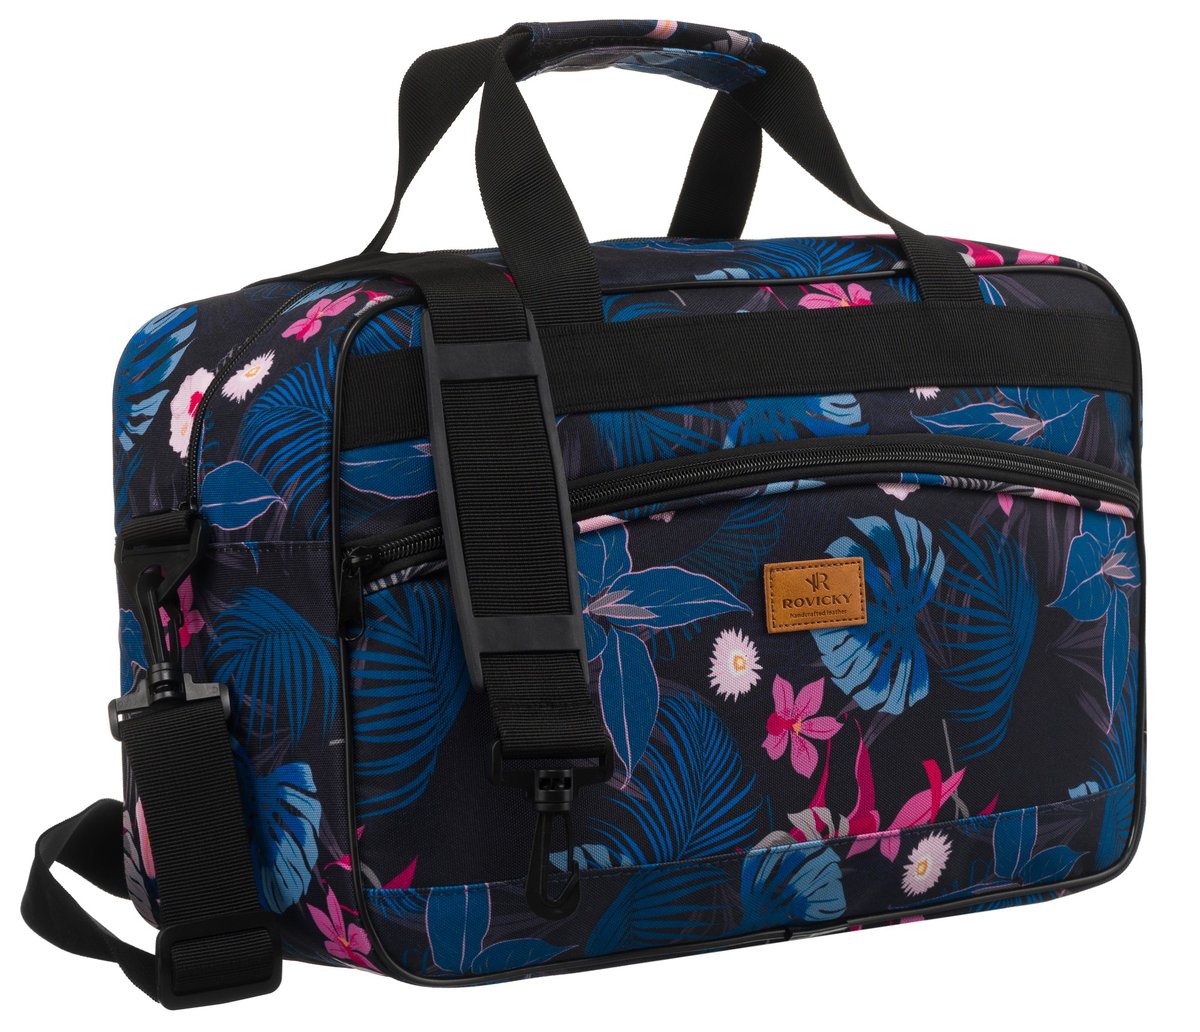 Damska torba podróżna, bagaż podręczny Ryanair/WizzAir Rovicky, różnokolorowy